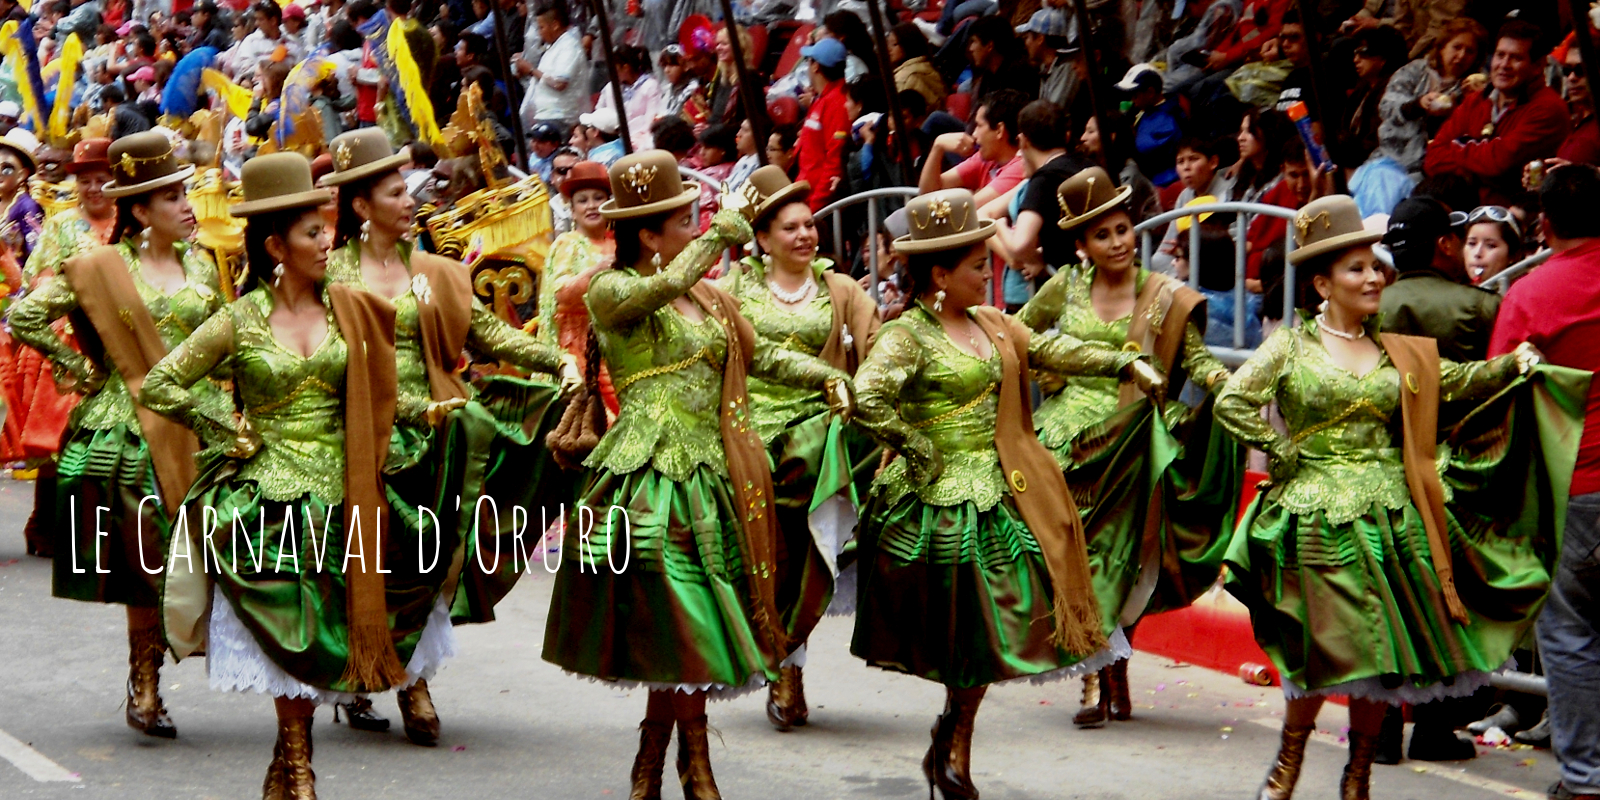 Le Carnaval d’Oruro